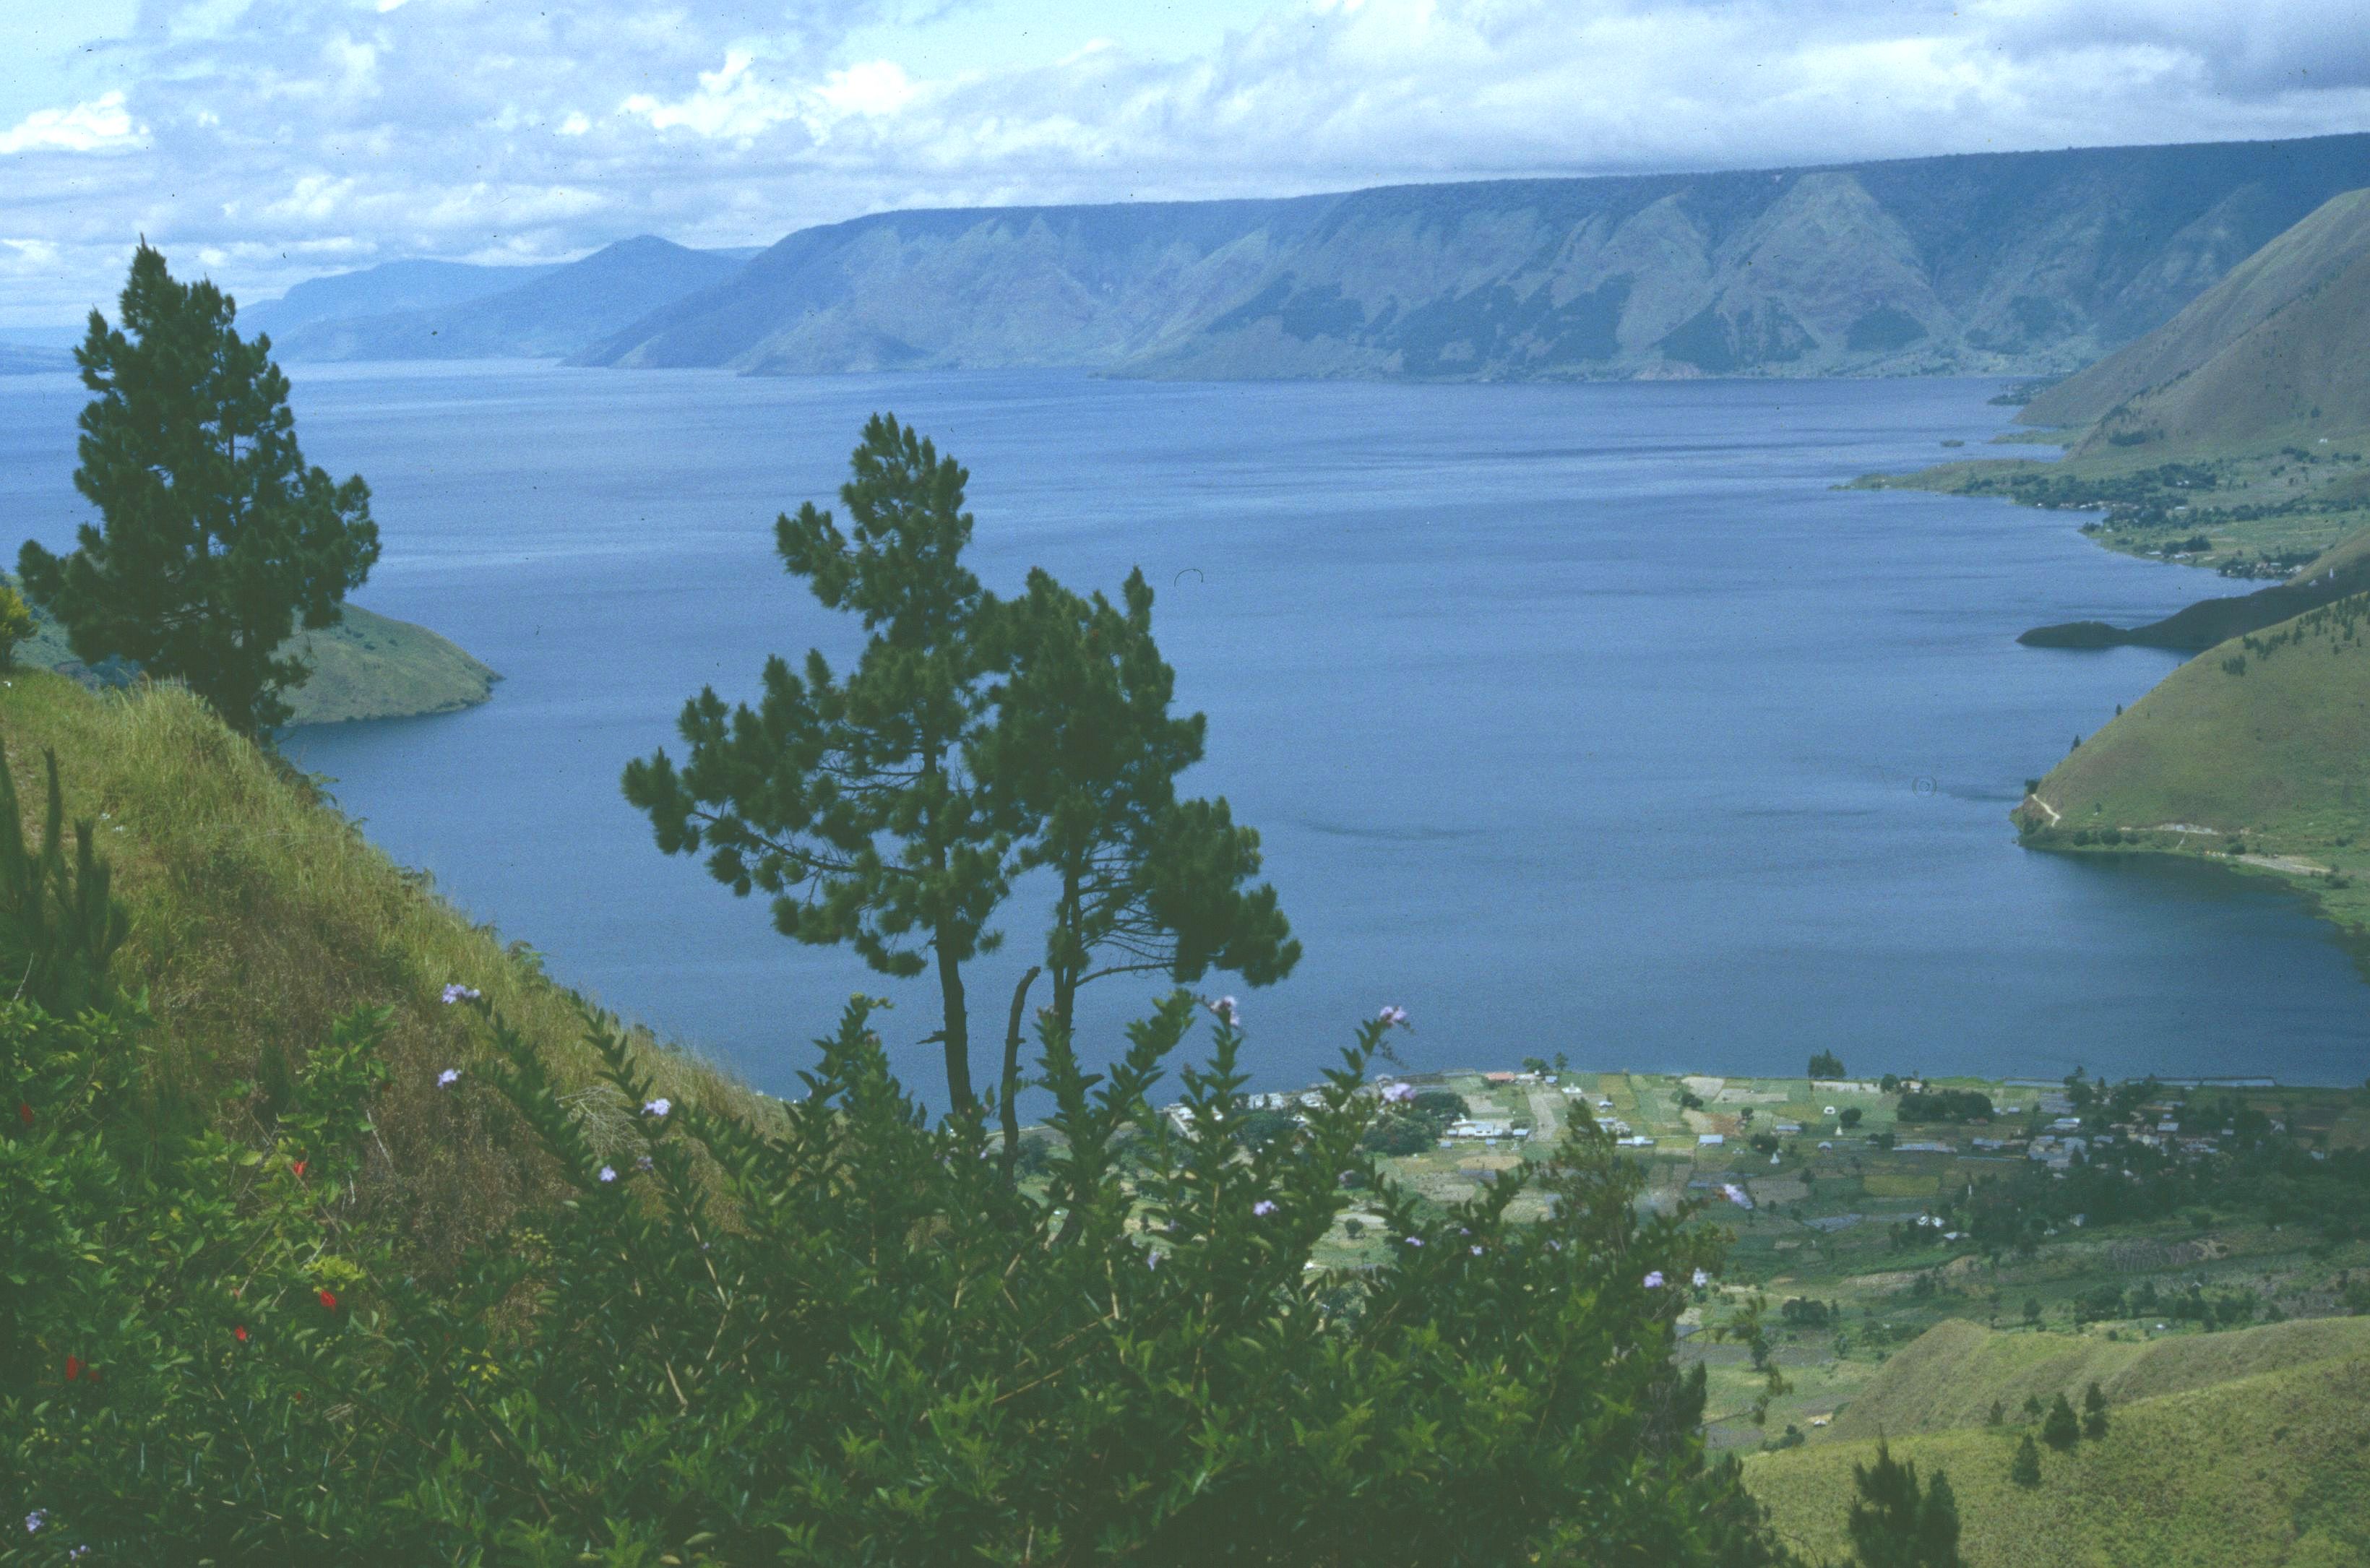 Danau Toba yang kita kenal saat ini merupakan danau tekto-vulkanik terbesar di dunia yang terbentuk sekitar 75 ribu tahun lalu.